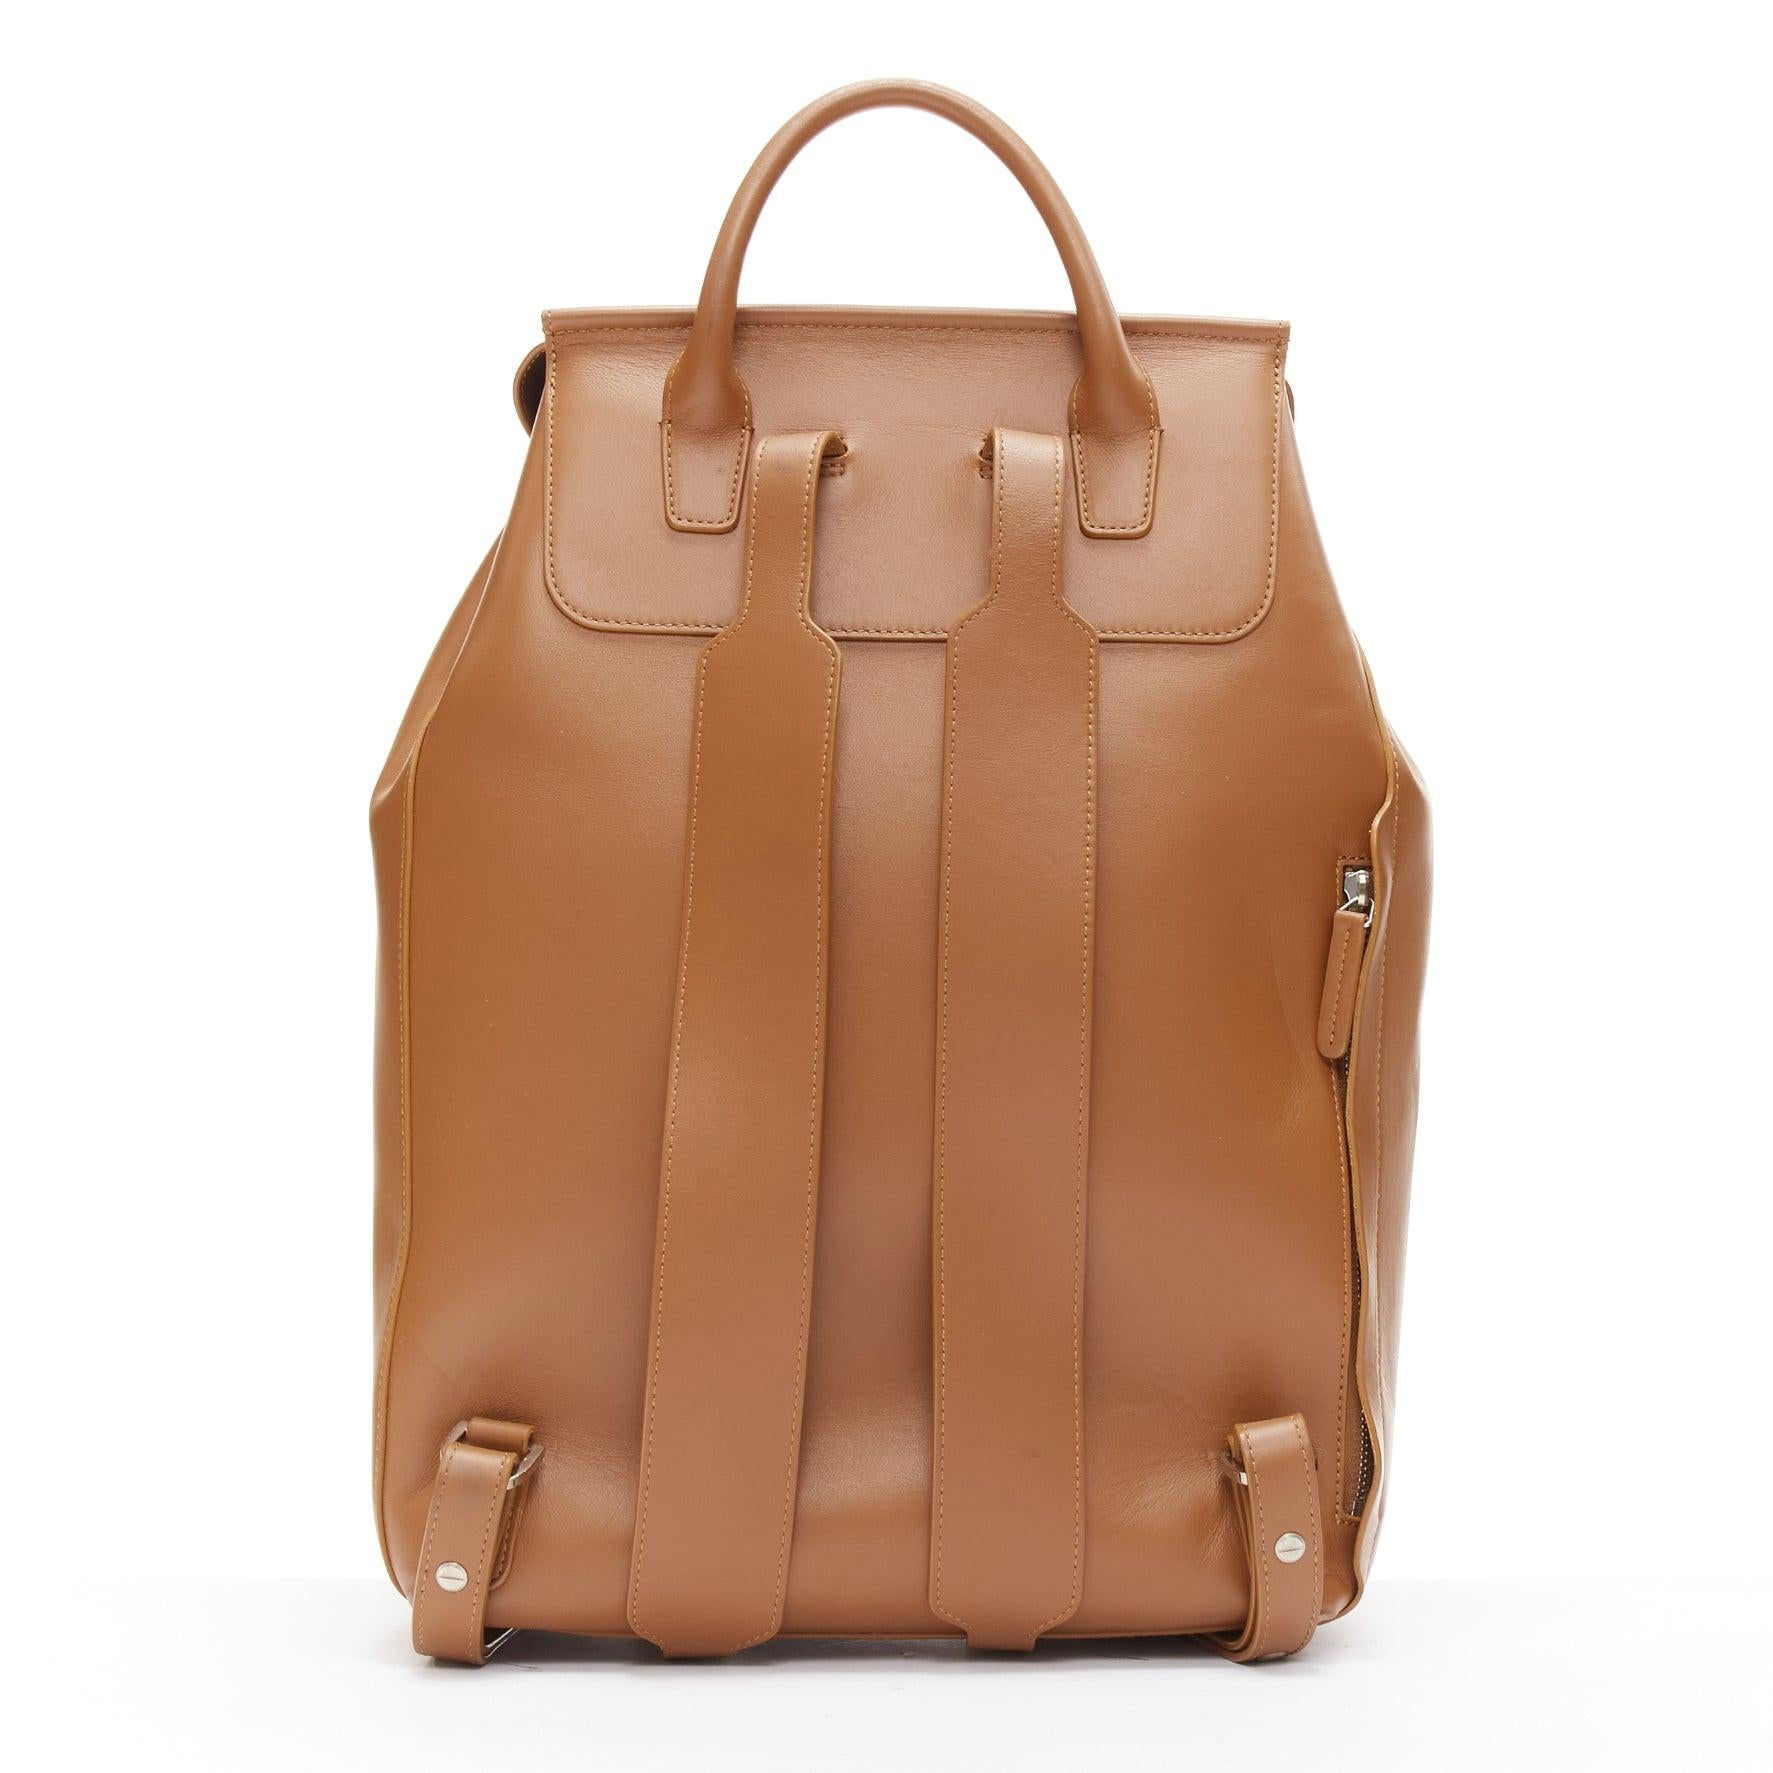 MANSUR GAVRIEL vegetable tanned calfskin leather minimal classic backpack bag 1